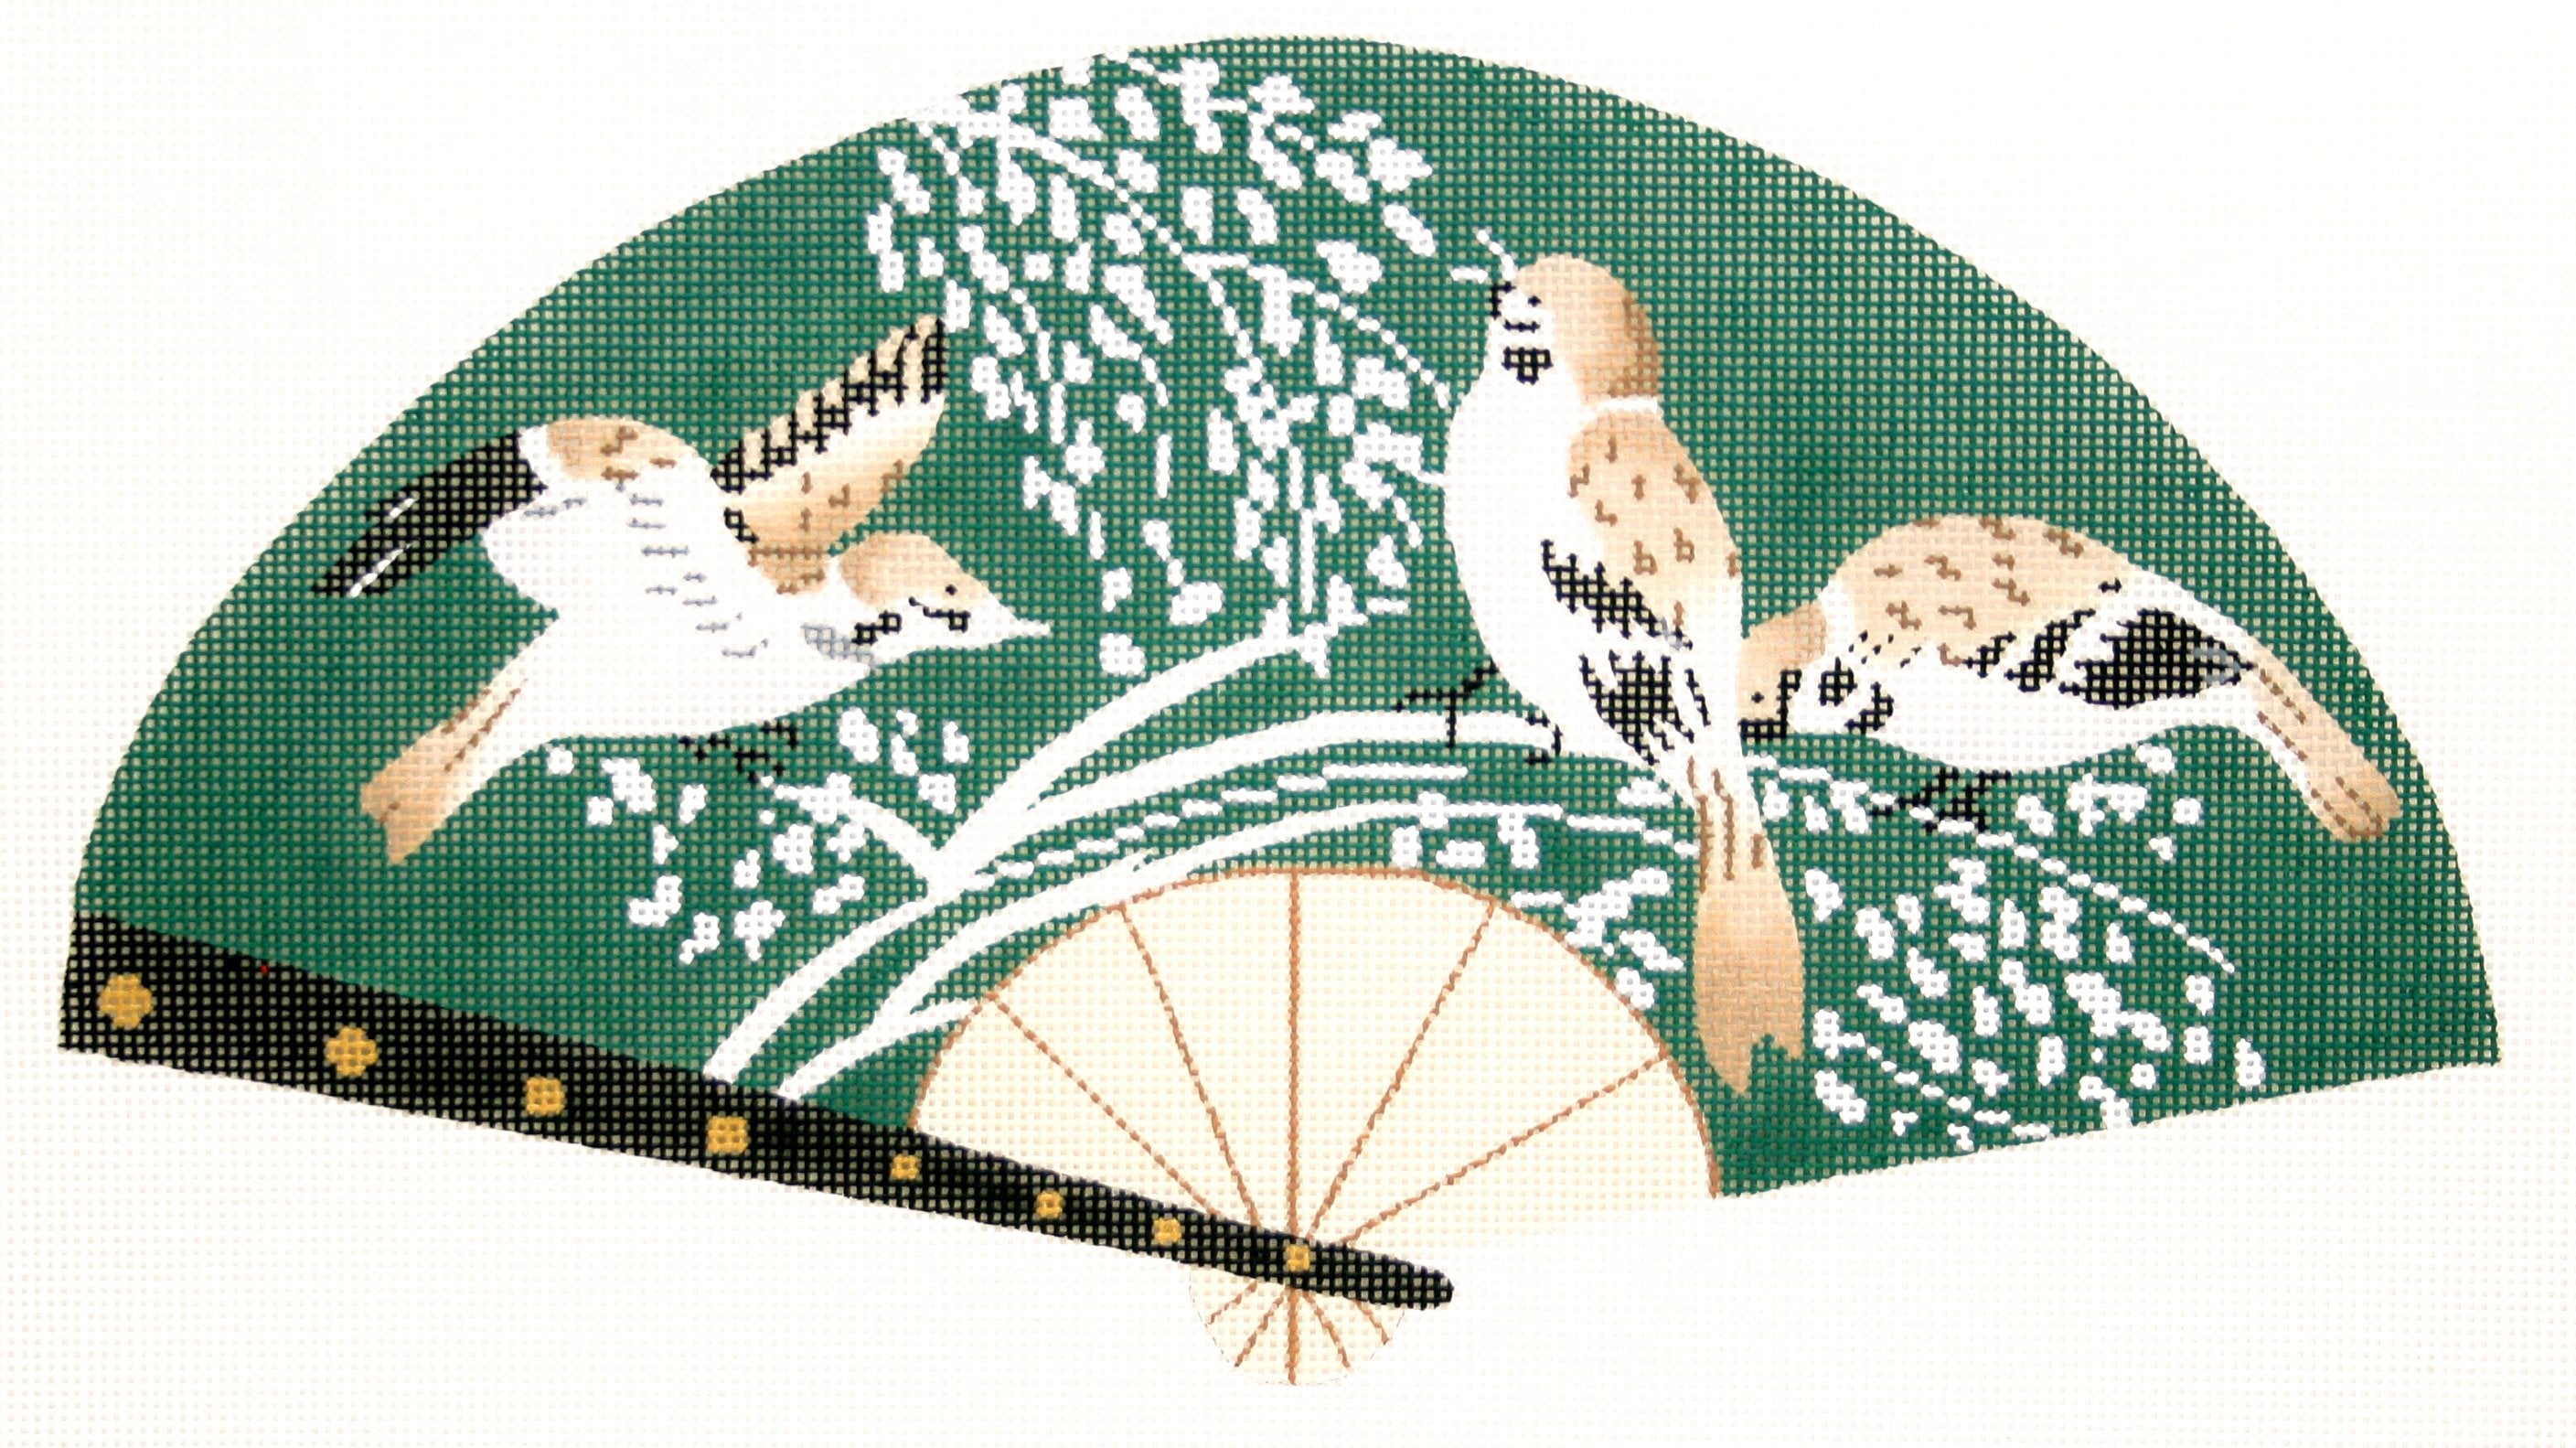 Birds on Green Fan